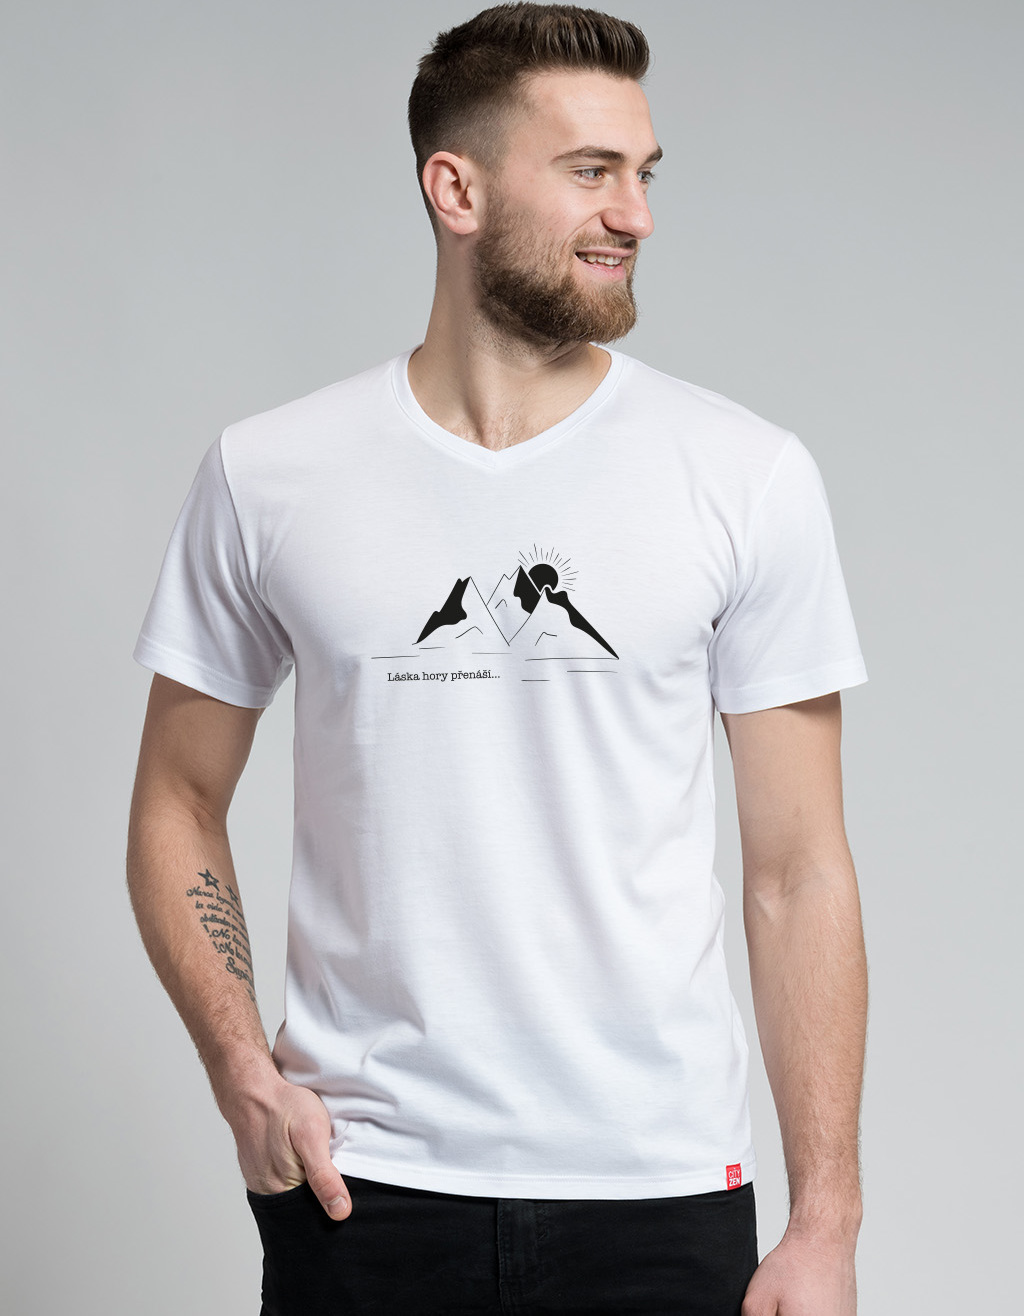 Pánské bavlněné tričko CITYZEN bílé Láska hory přenáší Velikost: XL